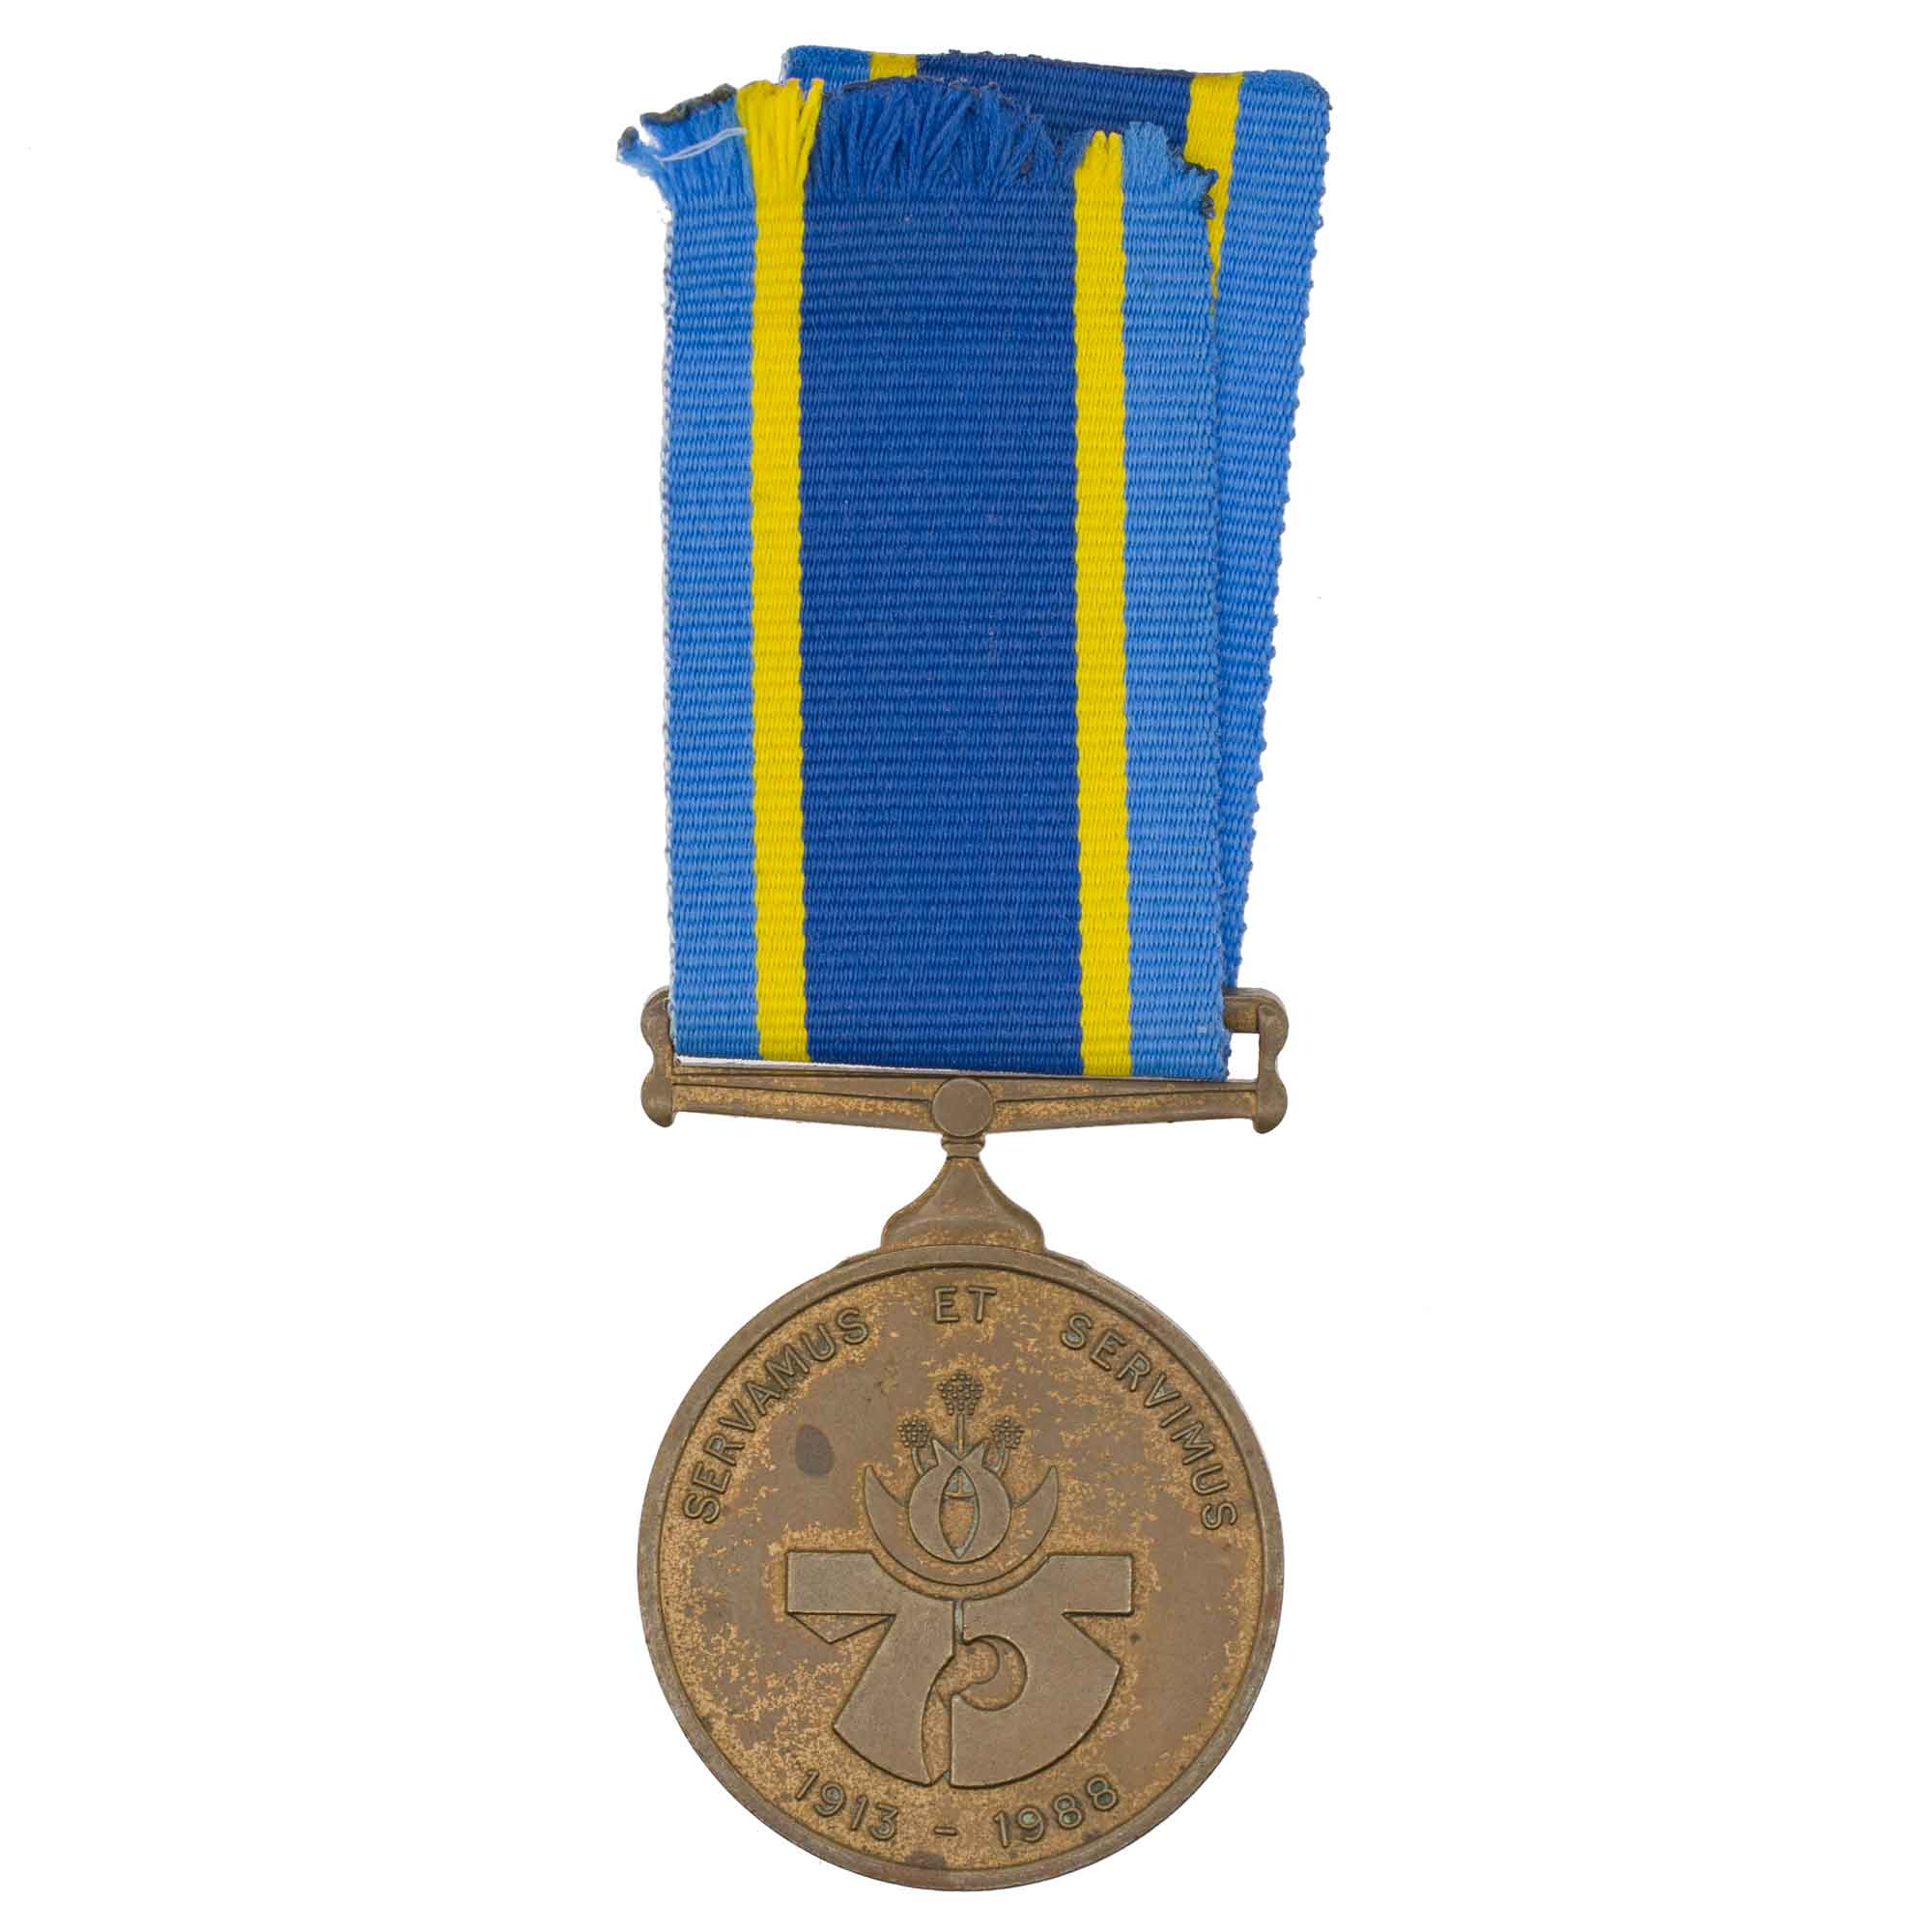 ЮАР. Медаль в память о 75 годовщине полиции 1913 - 1988 гг  № 237320 FBR KST.